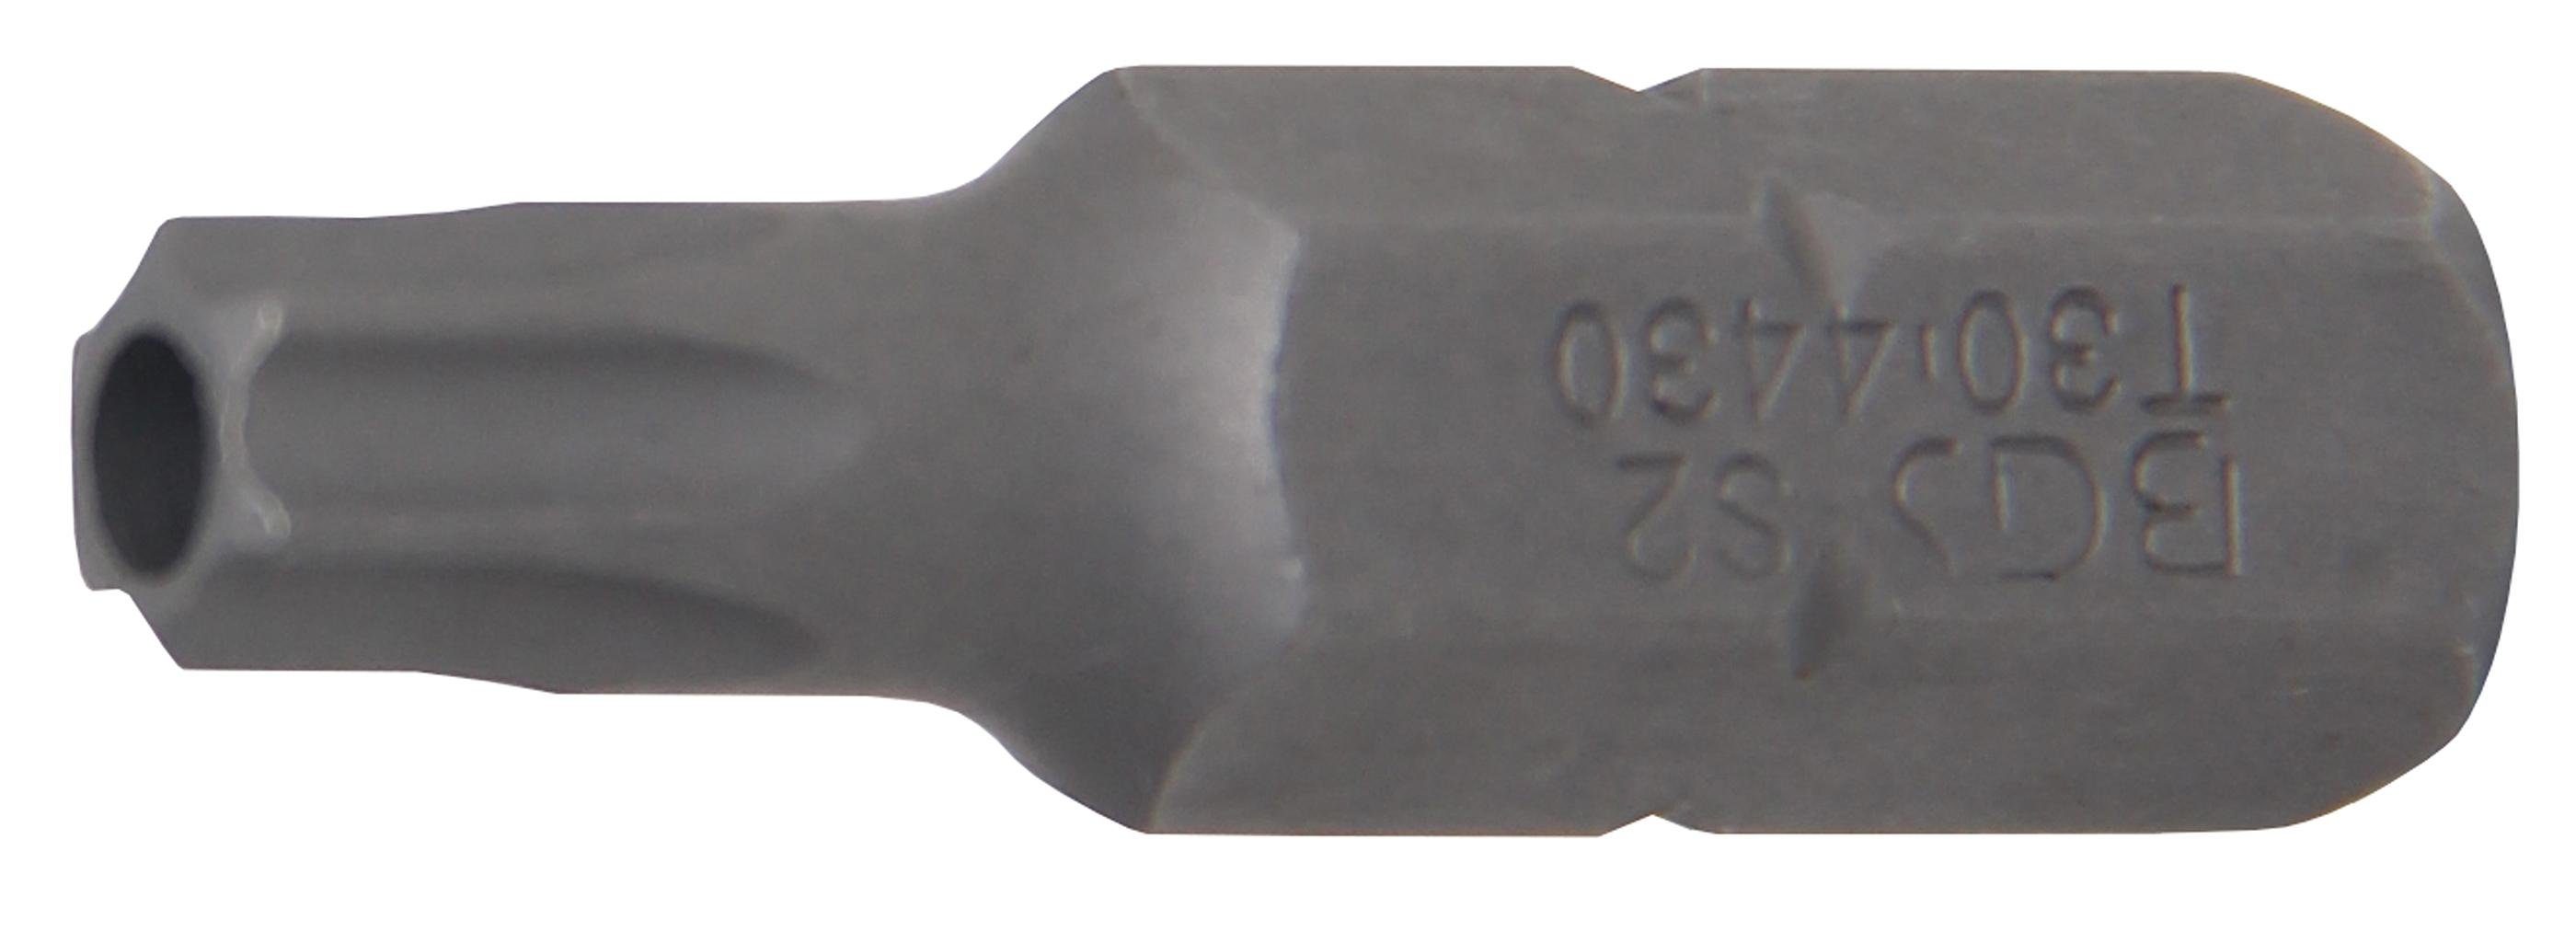 BGS technic Bit-Schraubendreher Bit, Antrieb Außensechskant 8 mm (5/16), T-Profil (für Torx) mit Bohrung T30